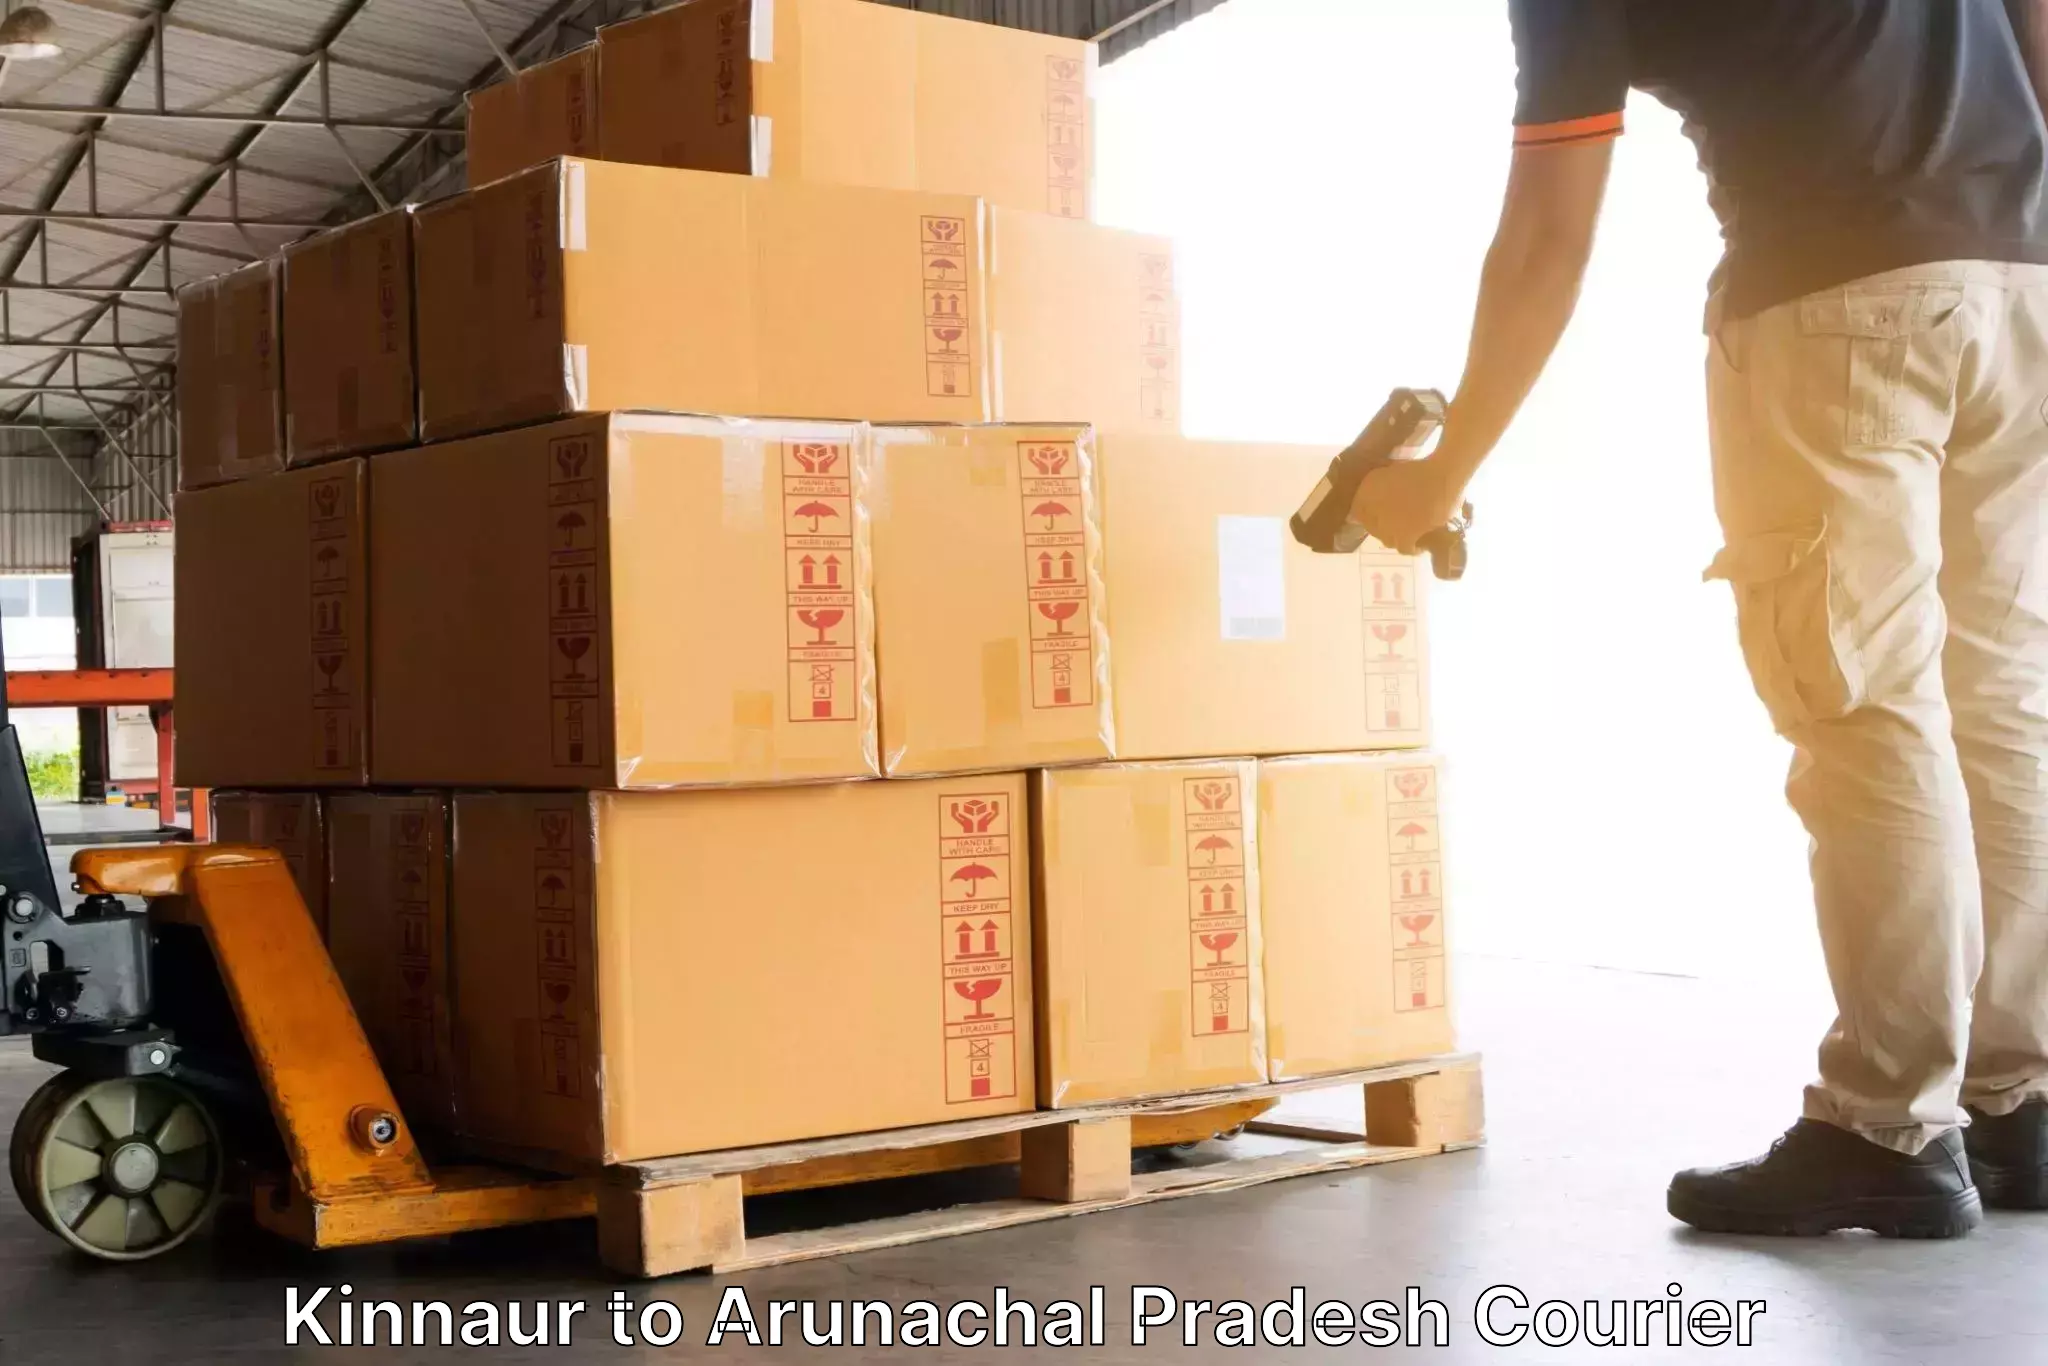 Secure package delivery Kinnaur to Upper Subansiri